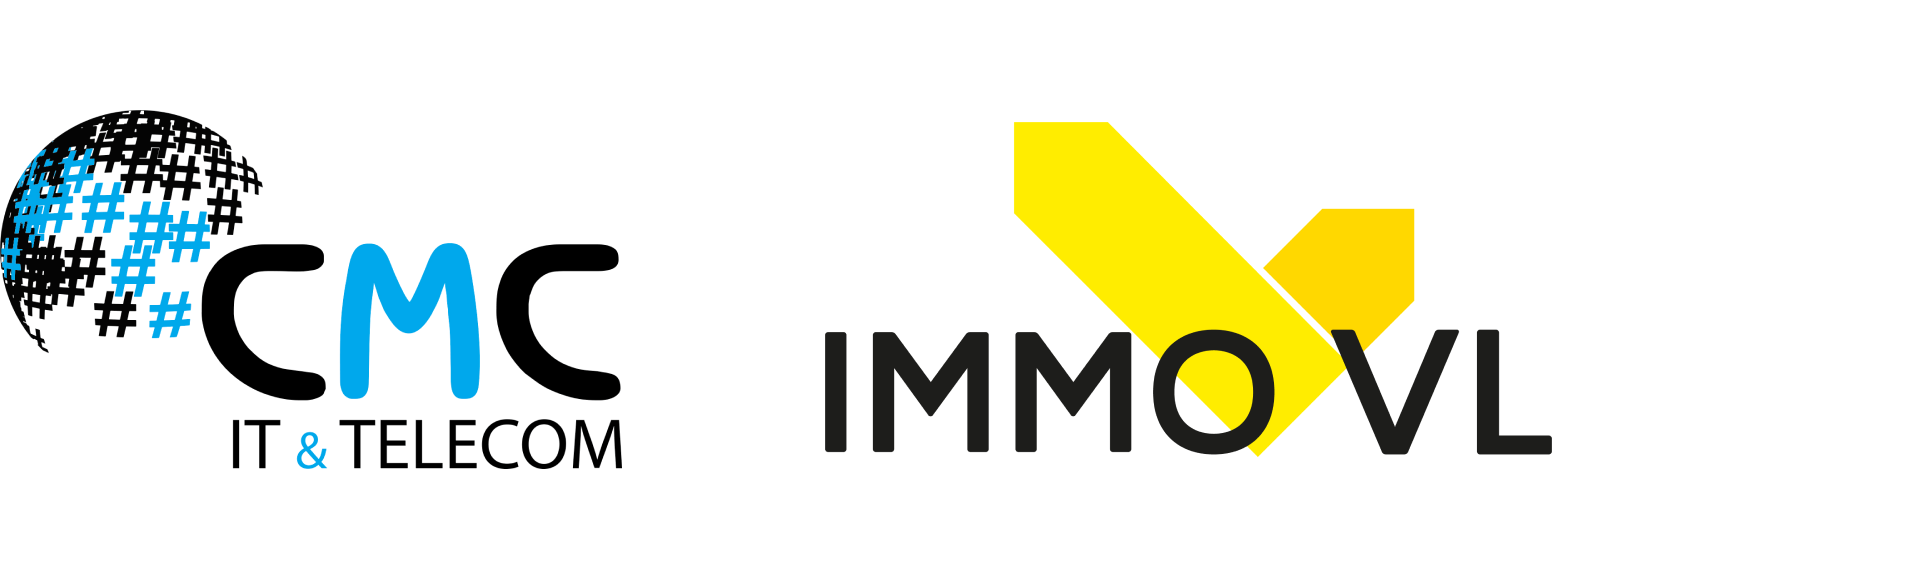 CMC en Immo VL, een Kempense match in IT & Telecom